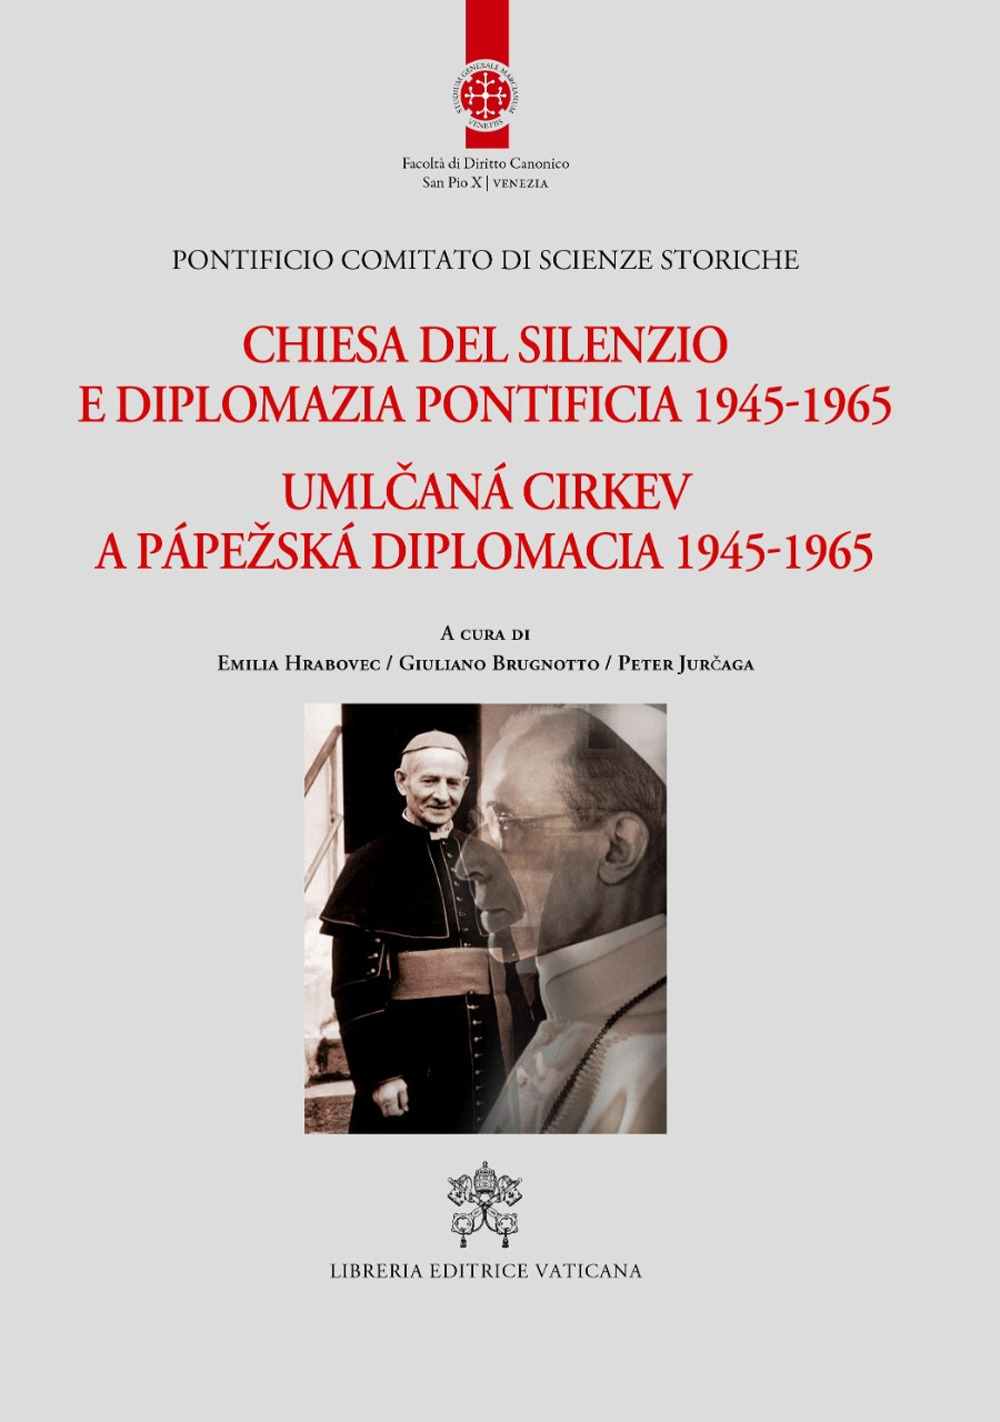 Image of Chiesa del silenzio e diplomazia pontificia 1945-1965